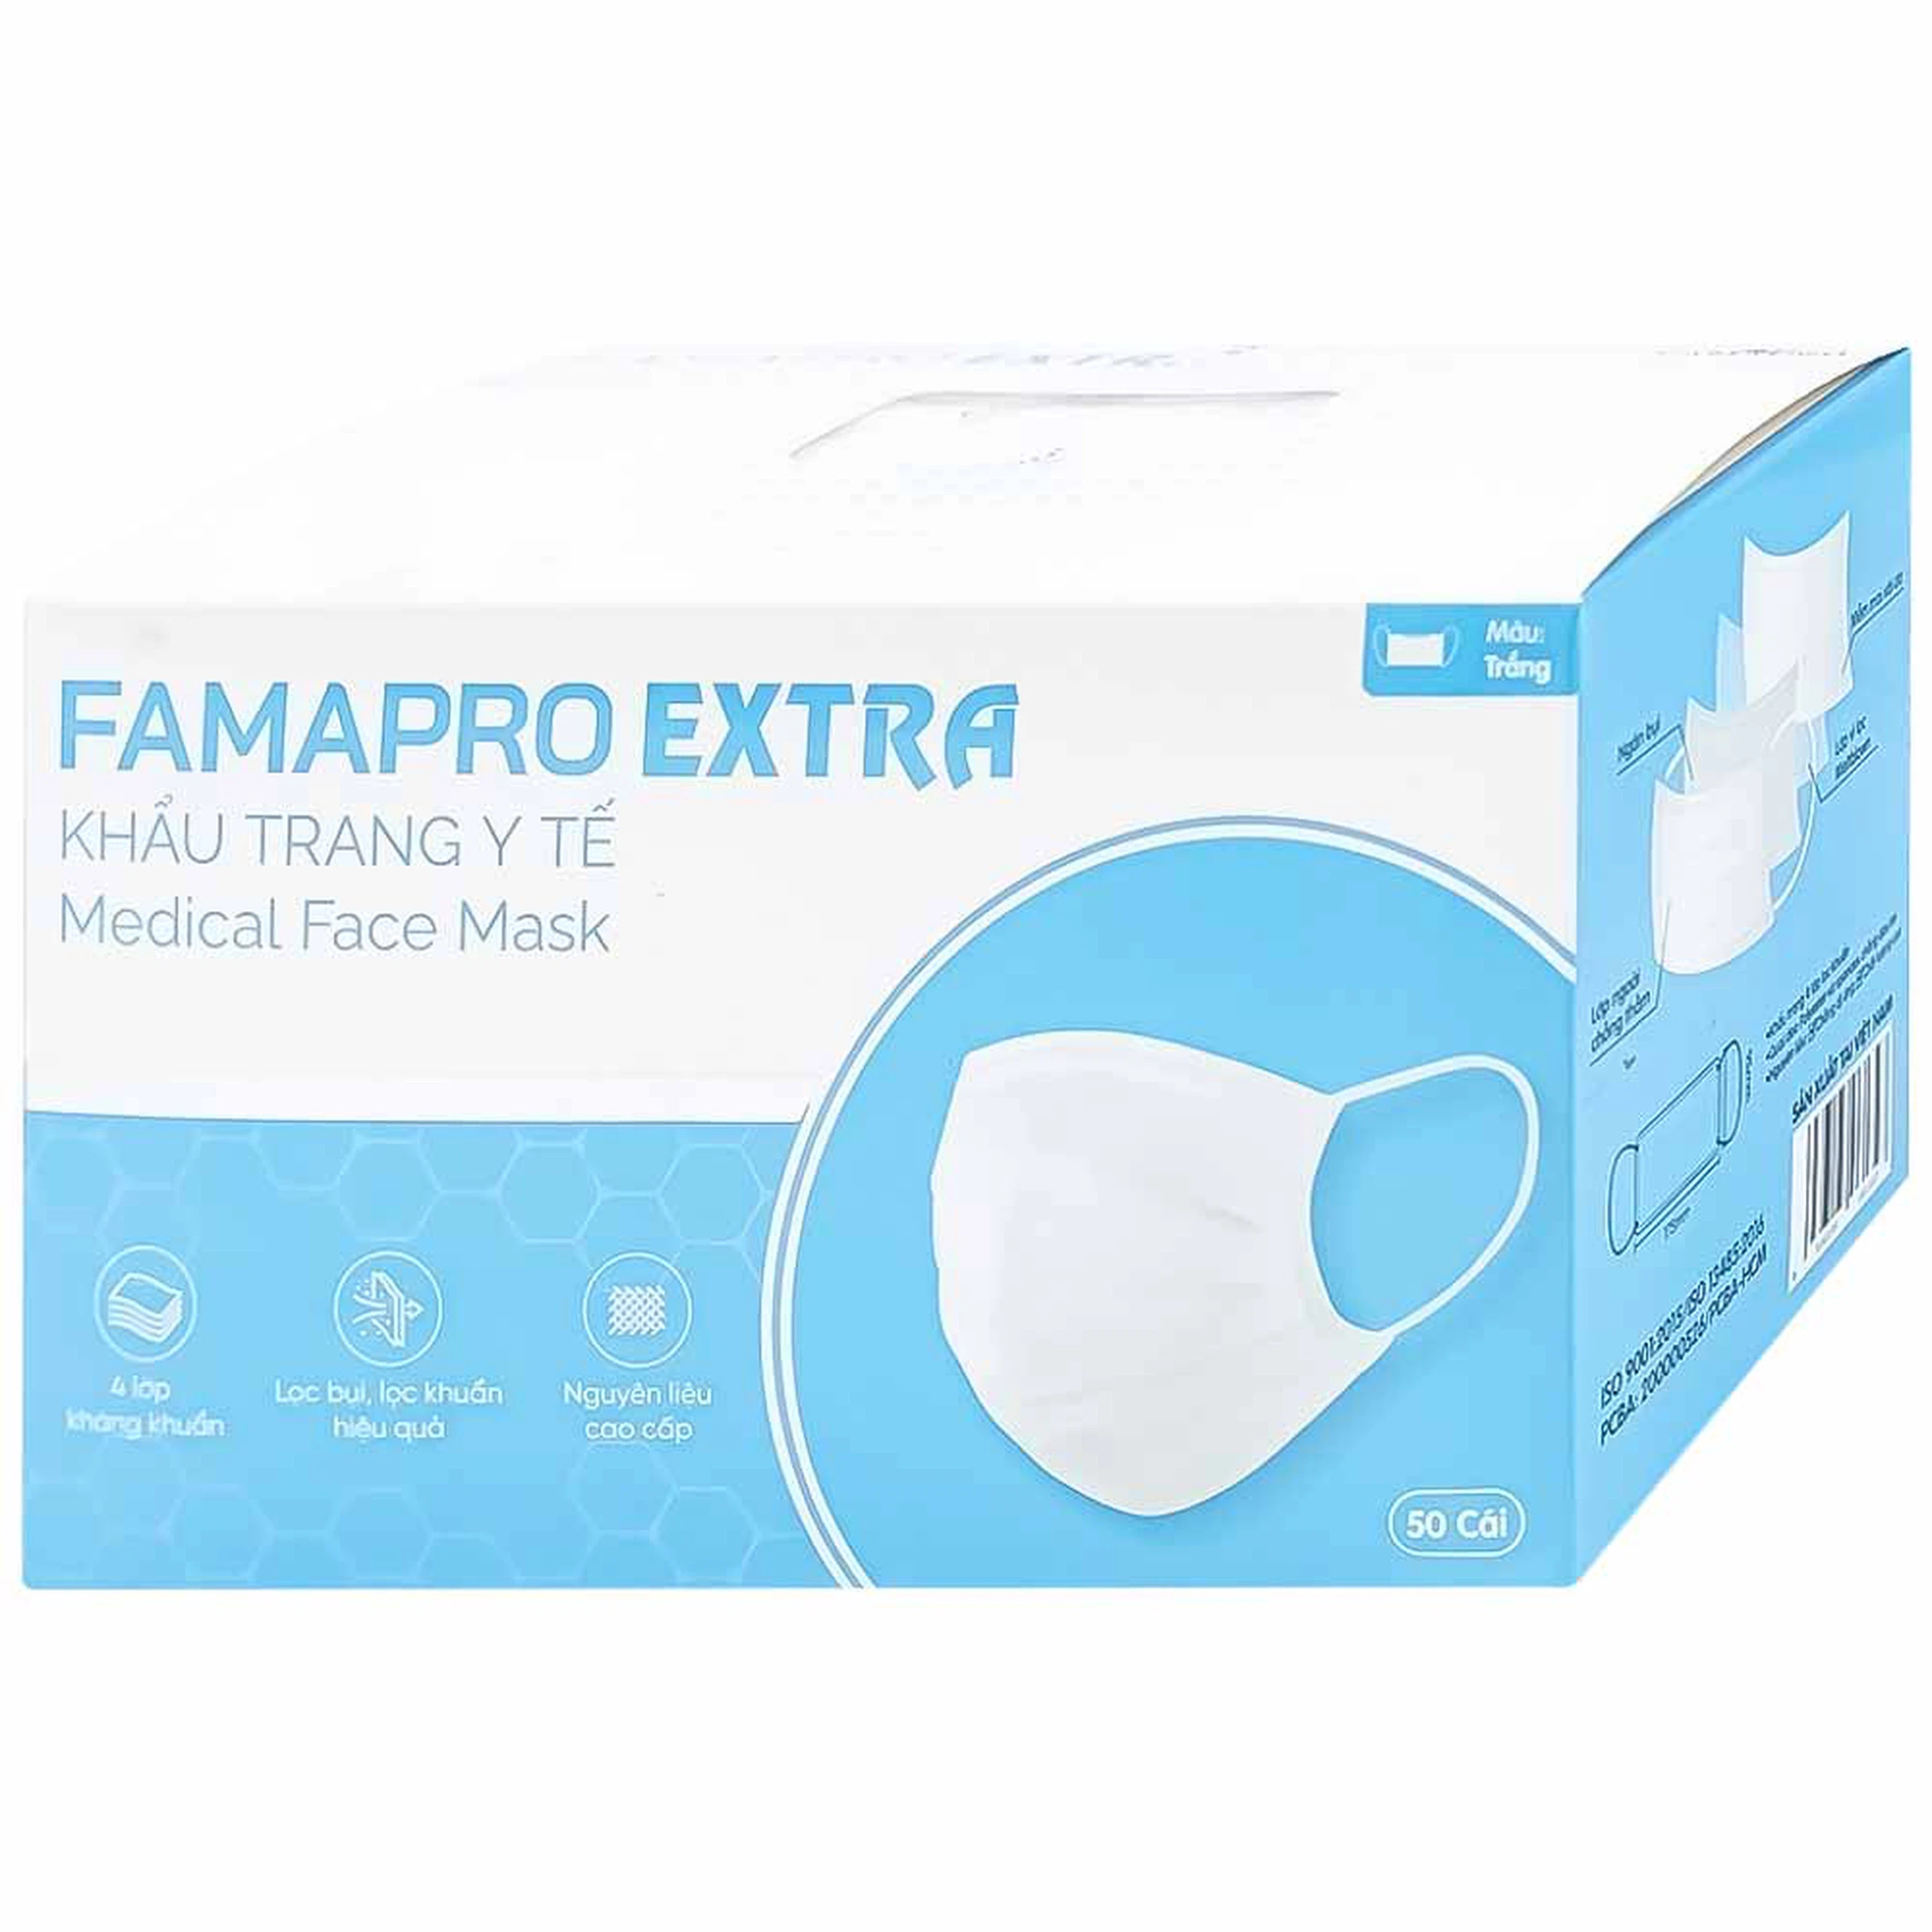 Khẩu trang y tế Famapro Extra màu trắng 4 lớp hỗ trợ ngăn khói, bụi, kháng khuẩn (50 cái)